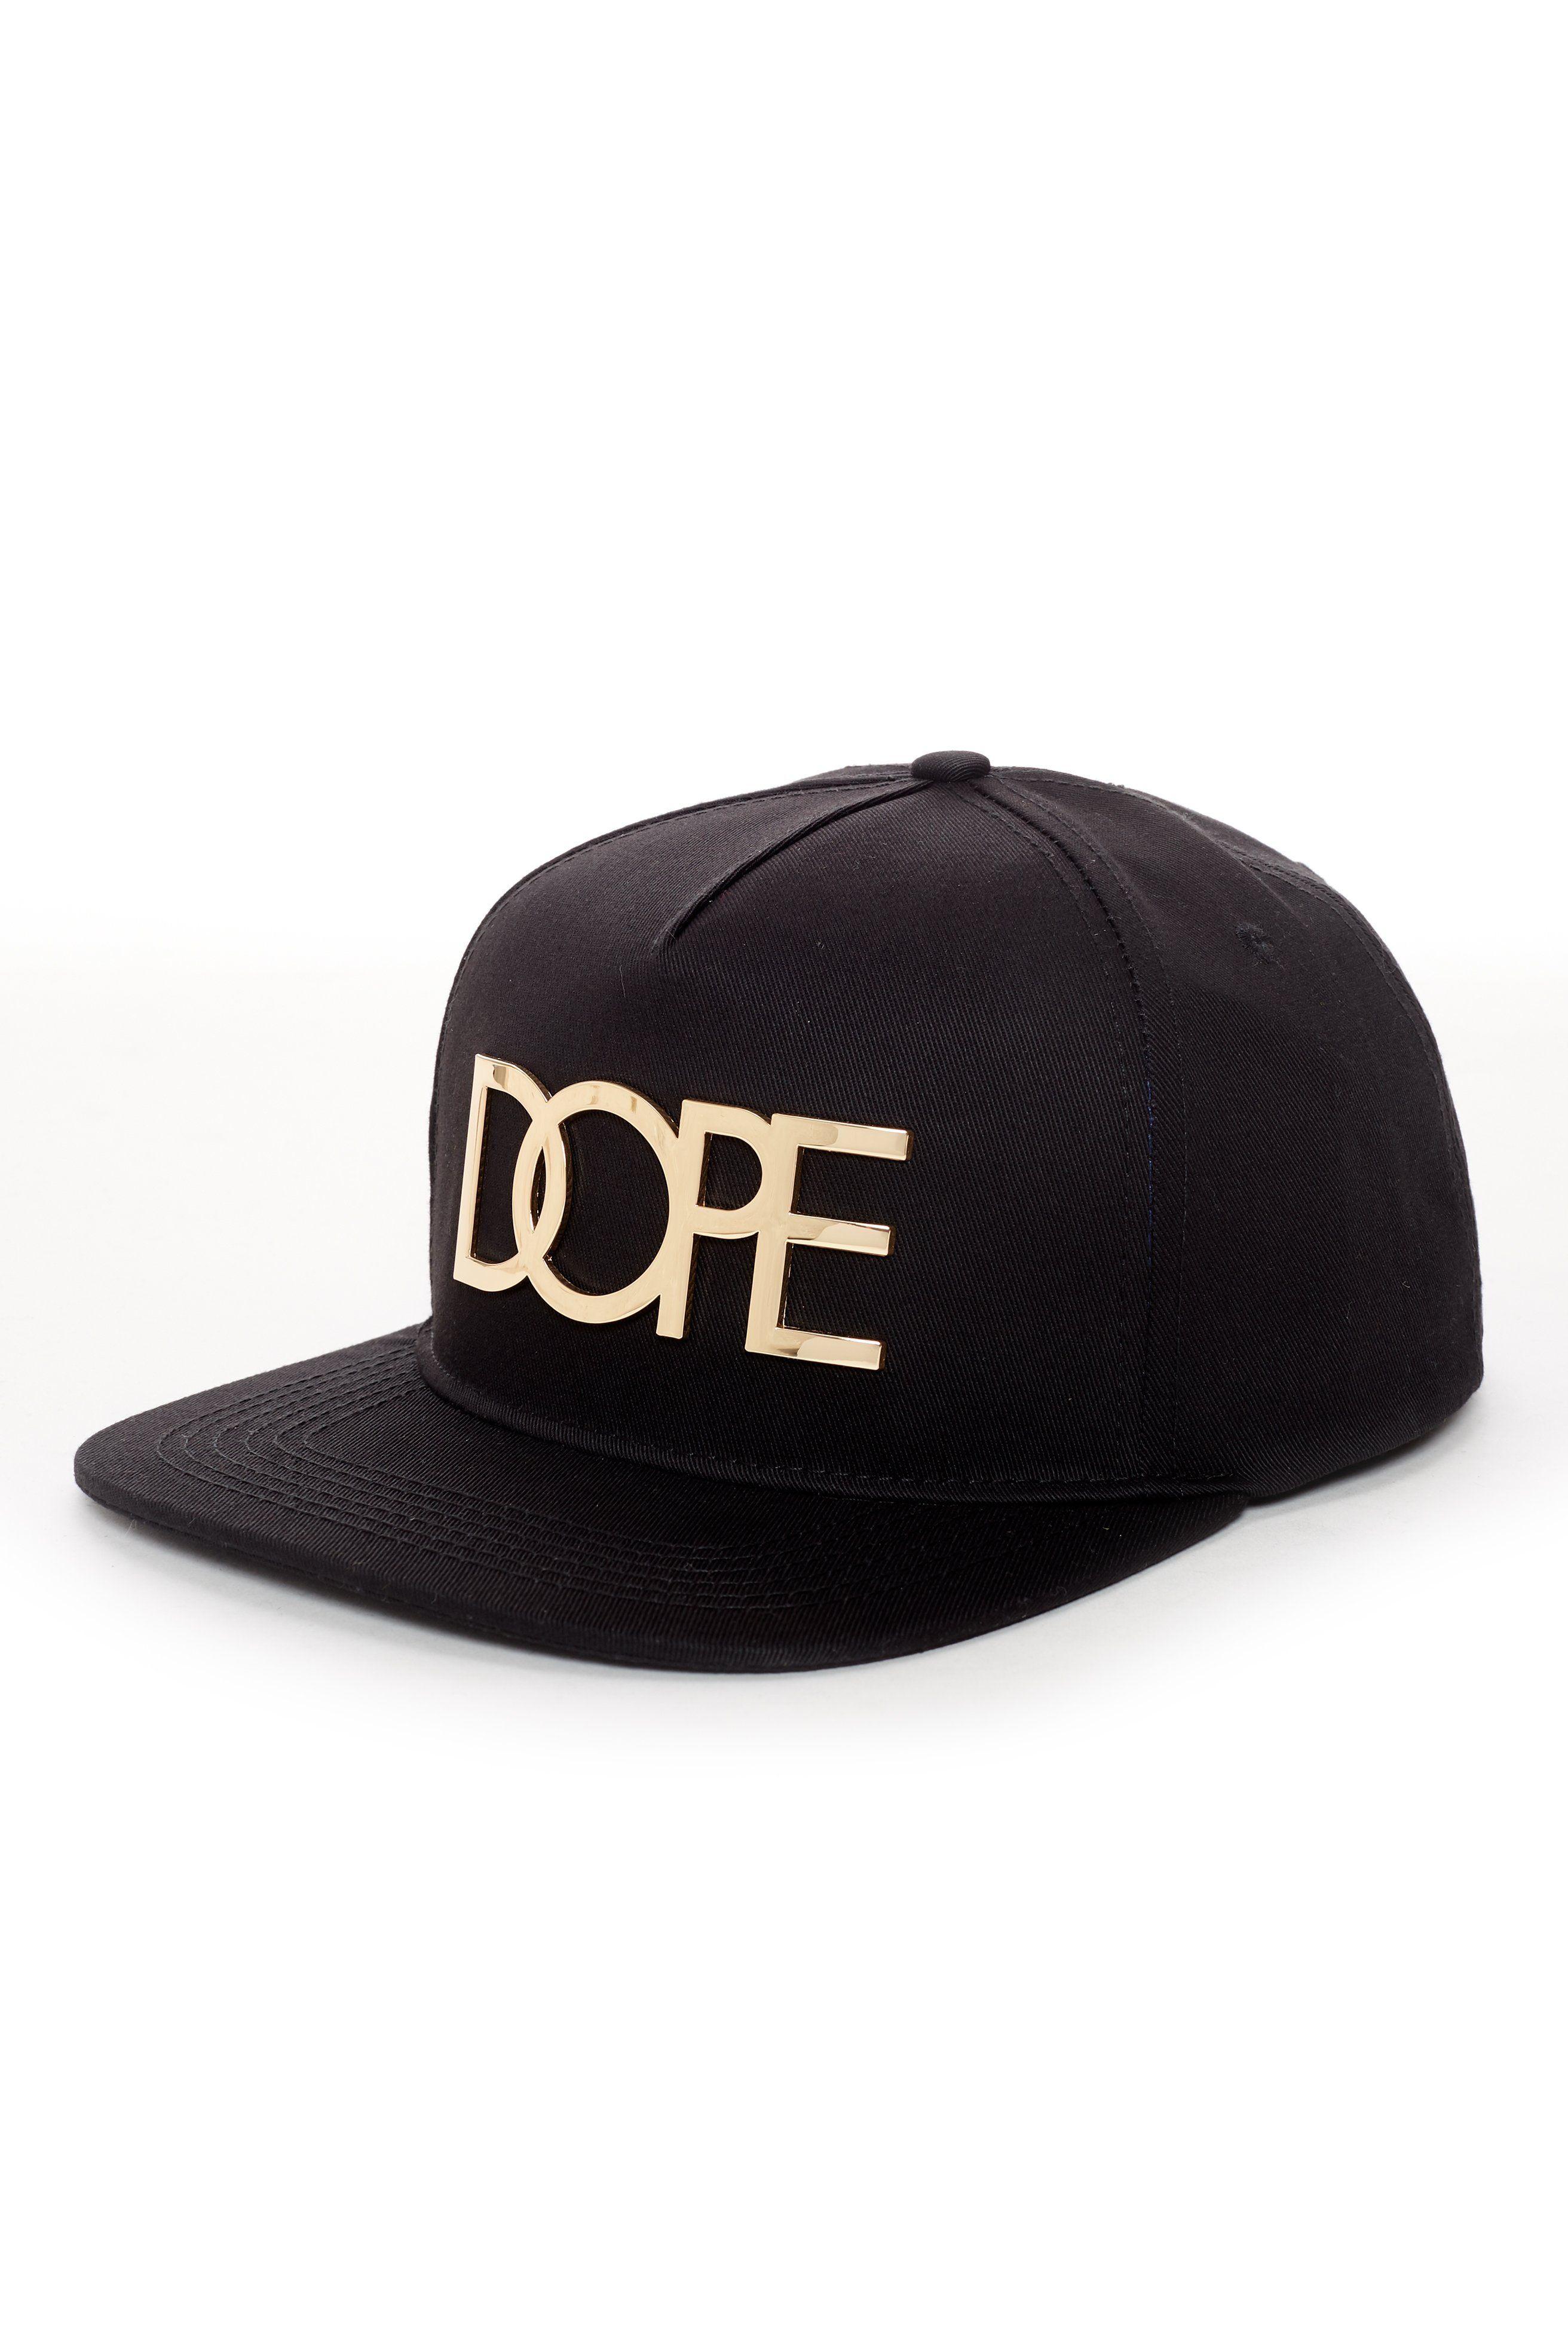 Dope Clothing Logo - 24k Gold Logo Snapback Hat | DOPE